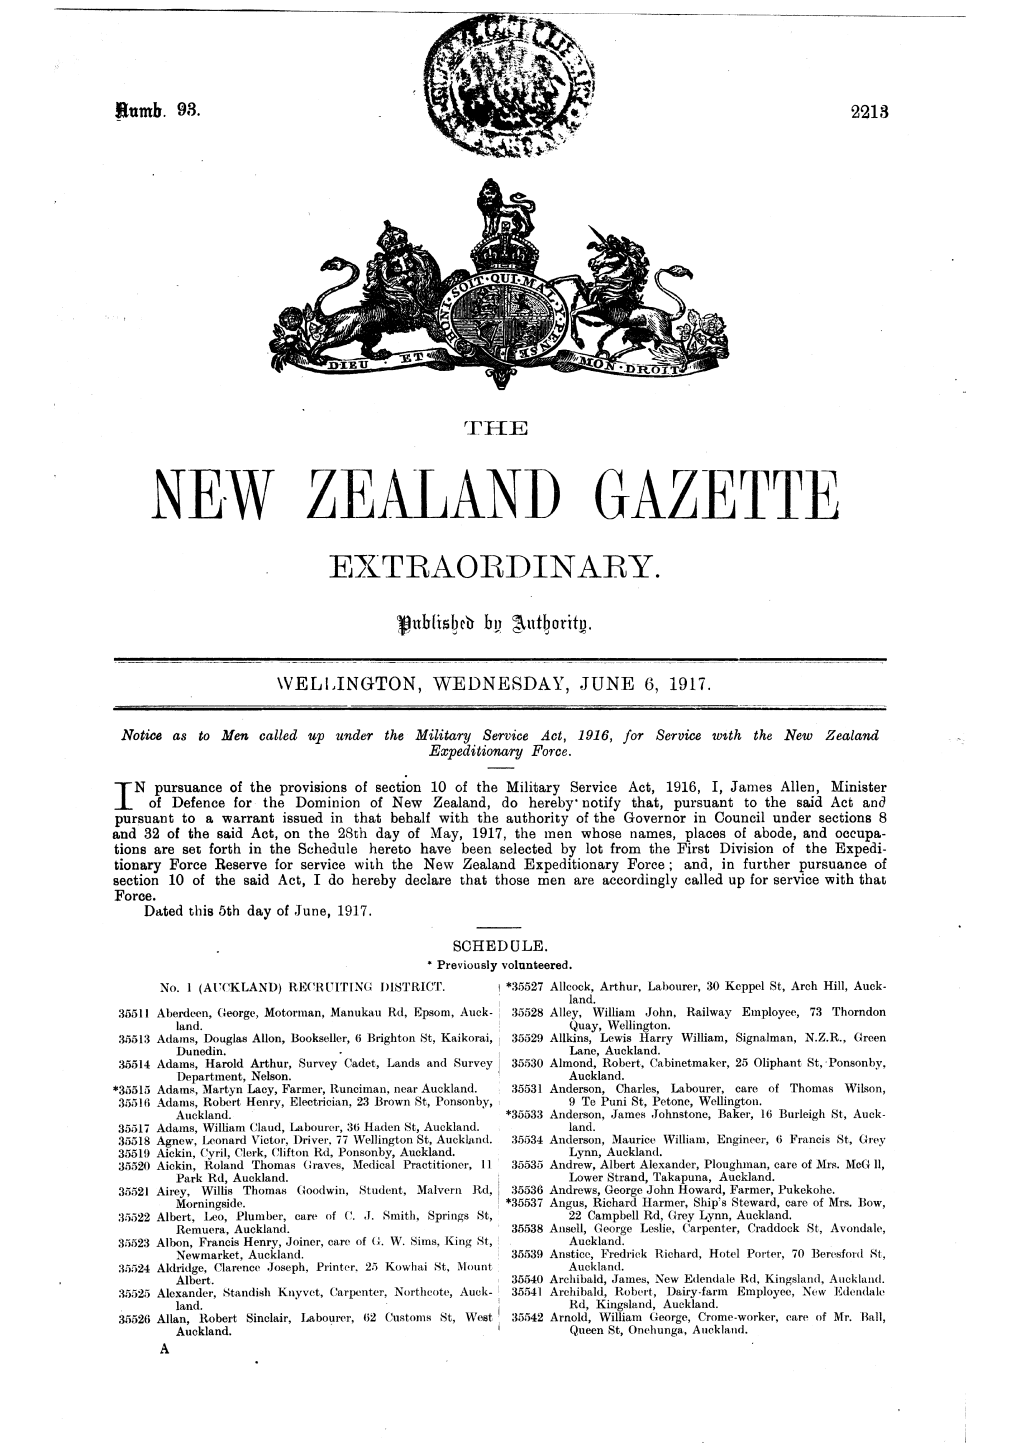 Ne·W Zealand Gazette Extraordinary